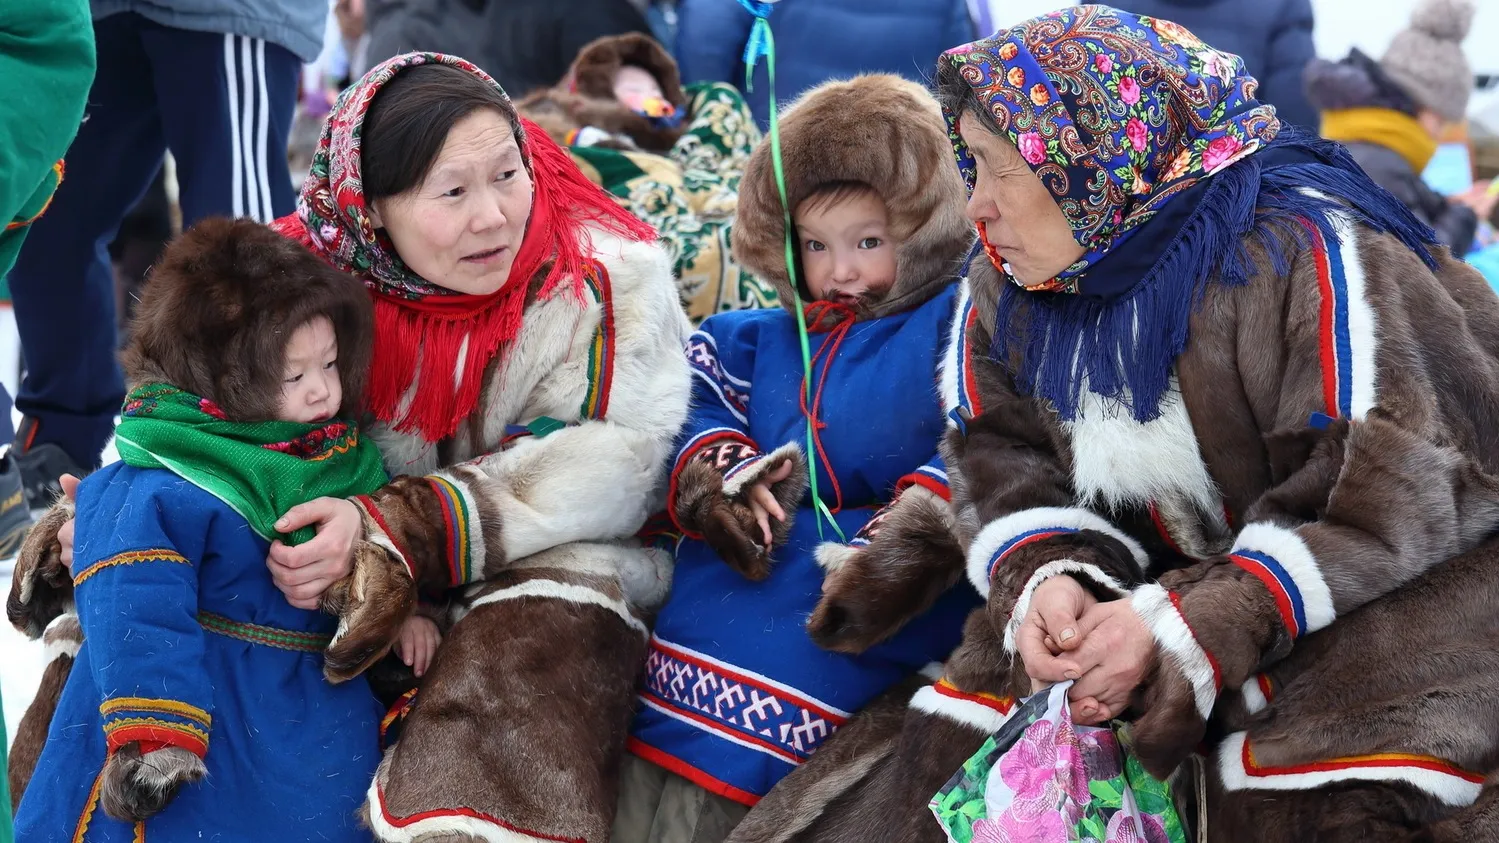 Семья оленеводов приехала на праздник. Фото: Grigorii Pisotsckii / Shutterstock / Fotodom